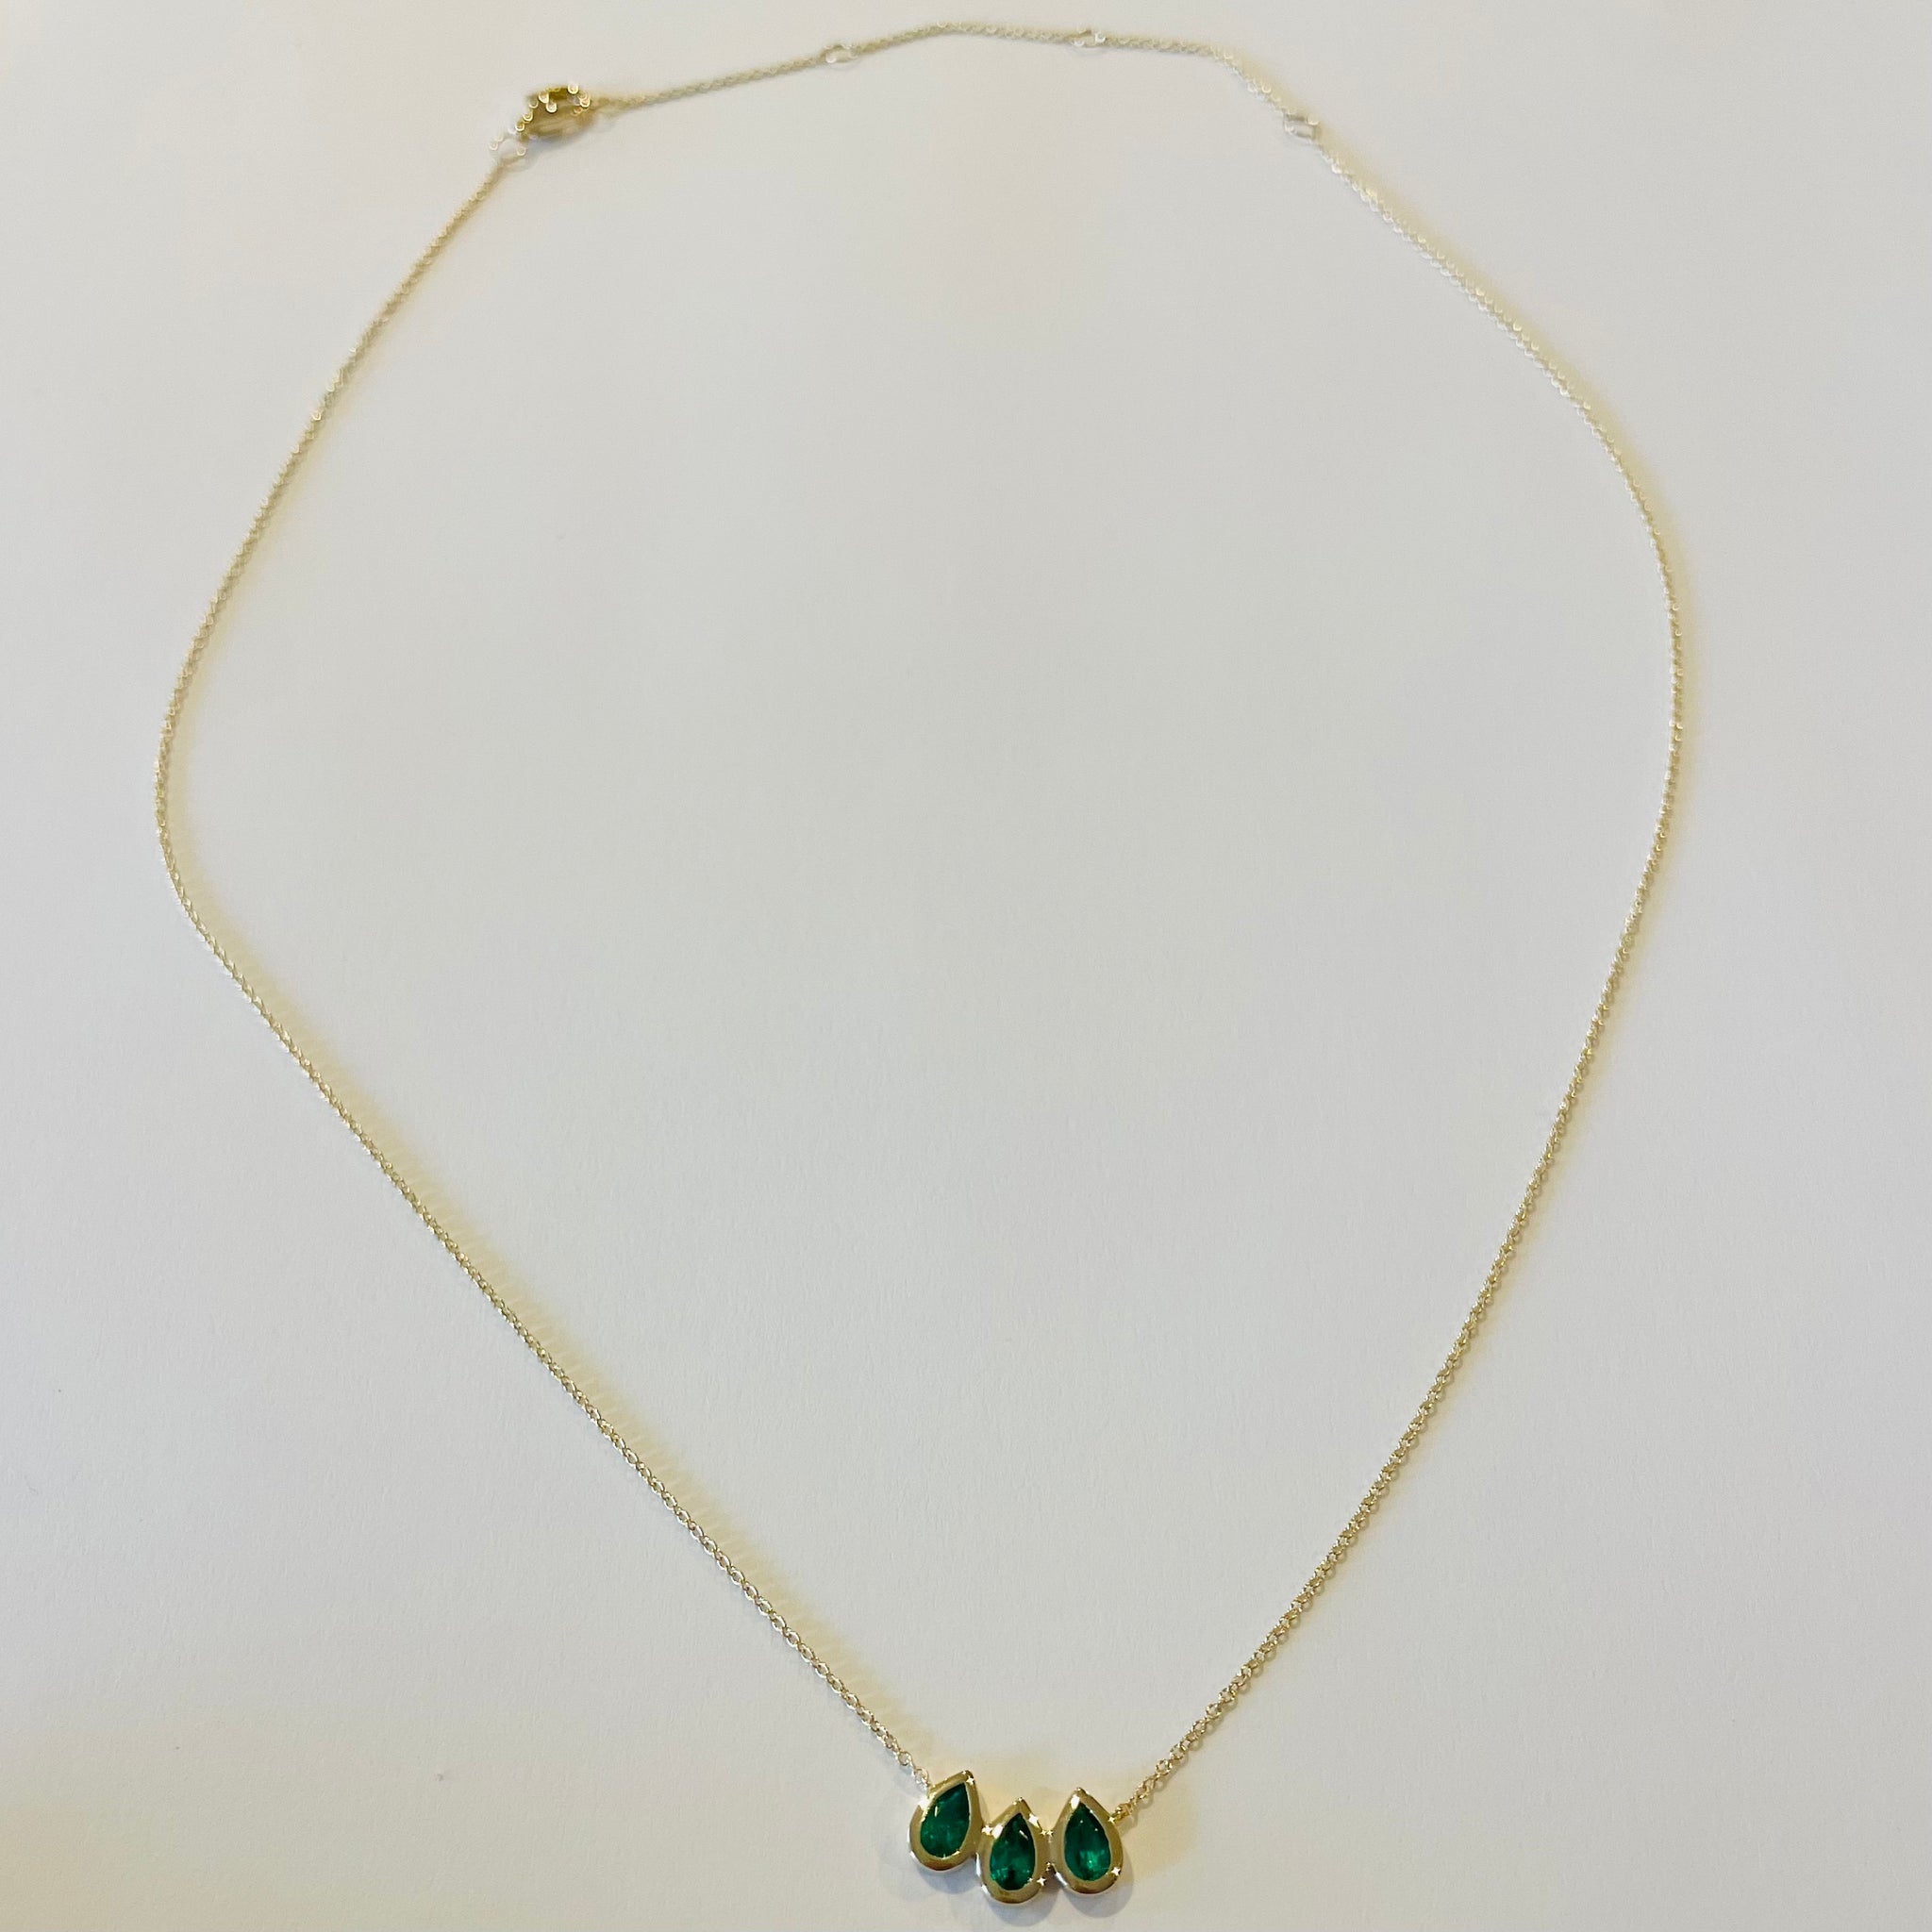 triple emerald teardrop necklace